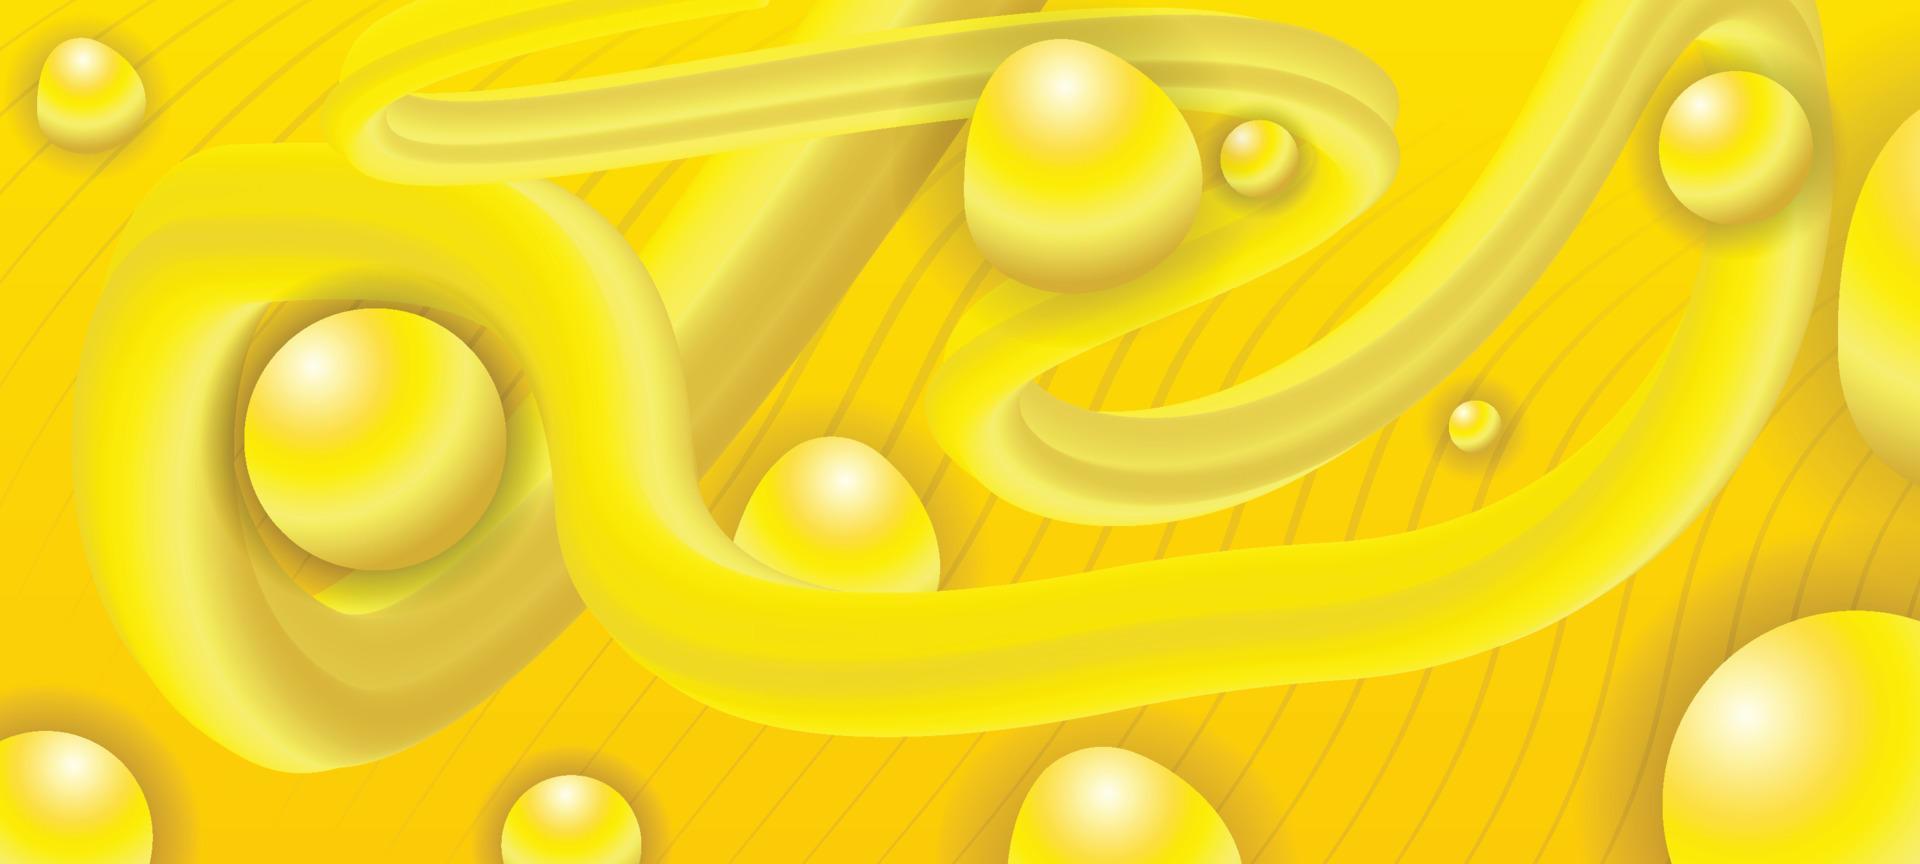 sfondo astratto giallo vettore